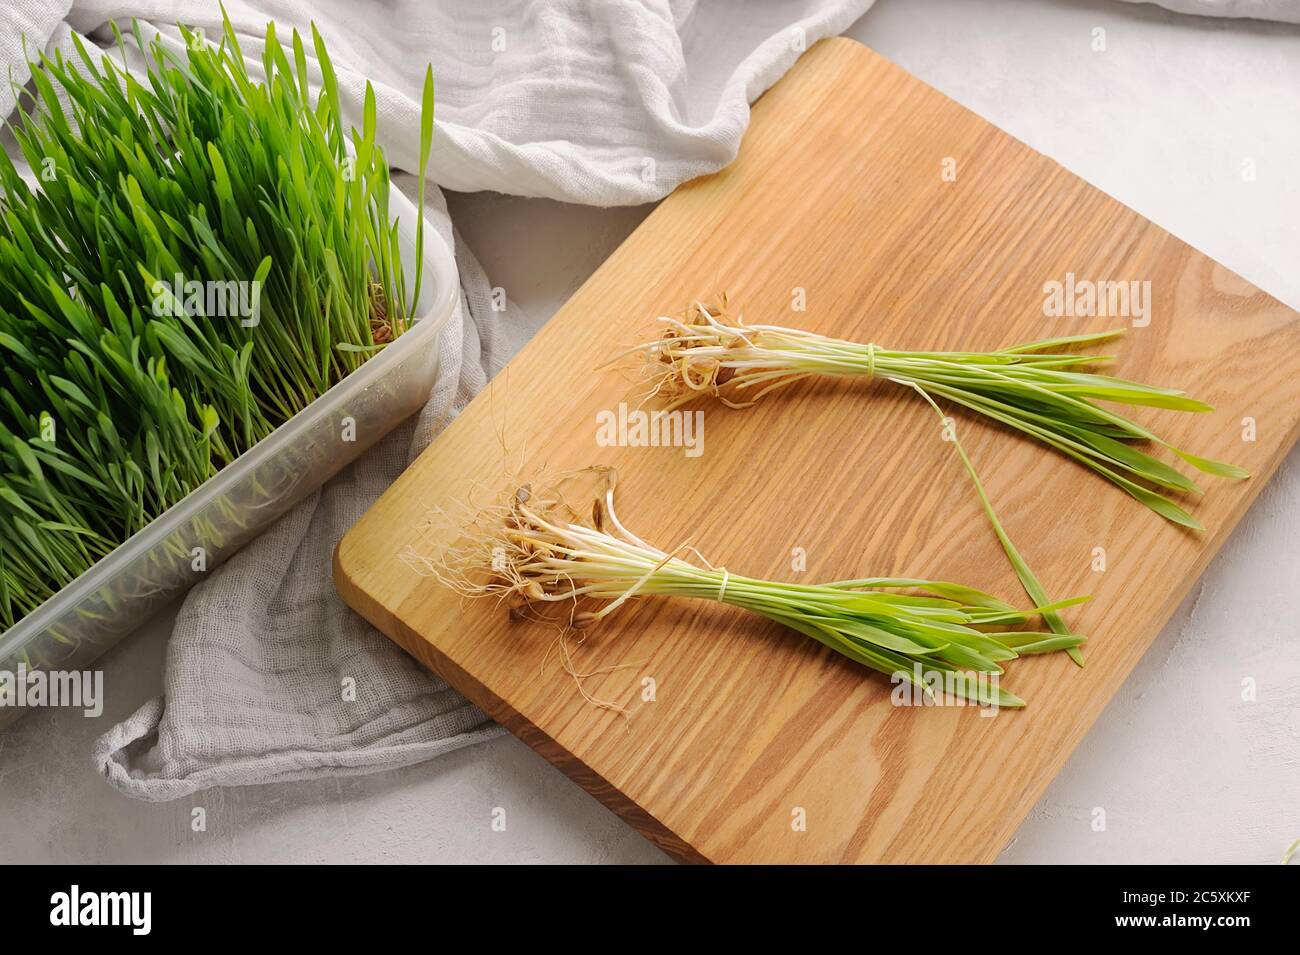 Plante d'herbe de blé verte sur la planche à découper et dans le pot.Sprout blé. Ingrédient sain et détox. Banque D'Images